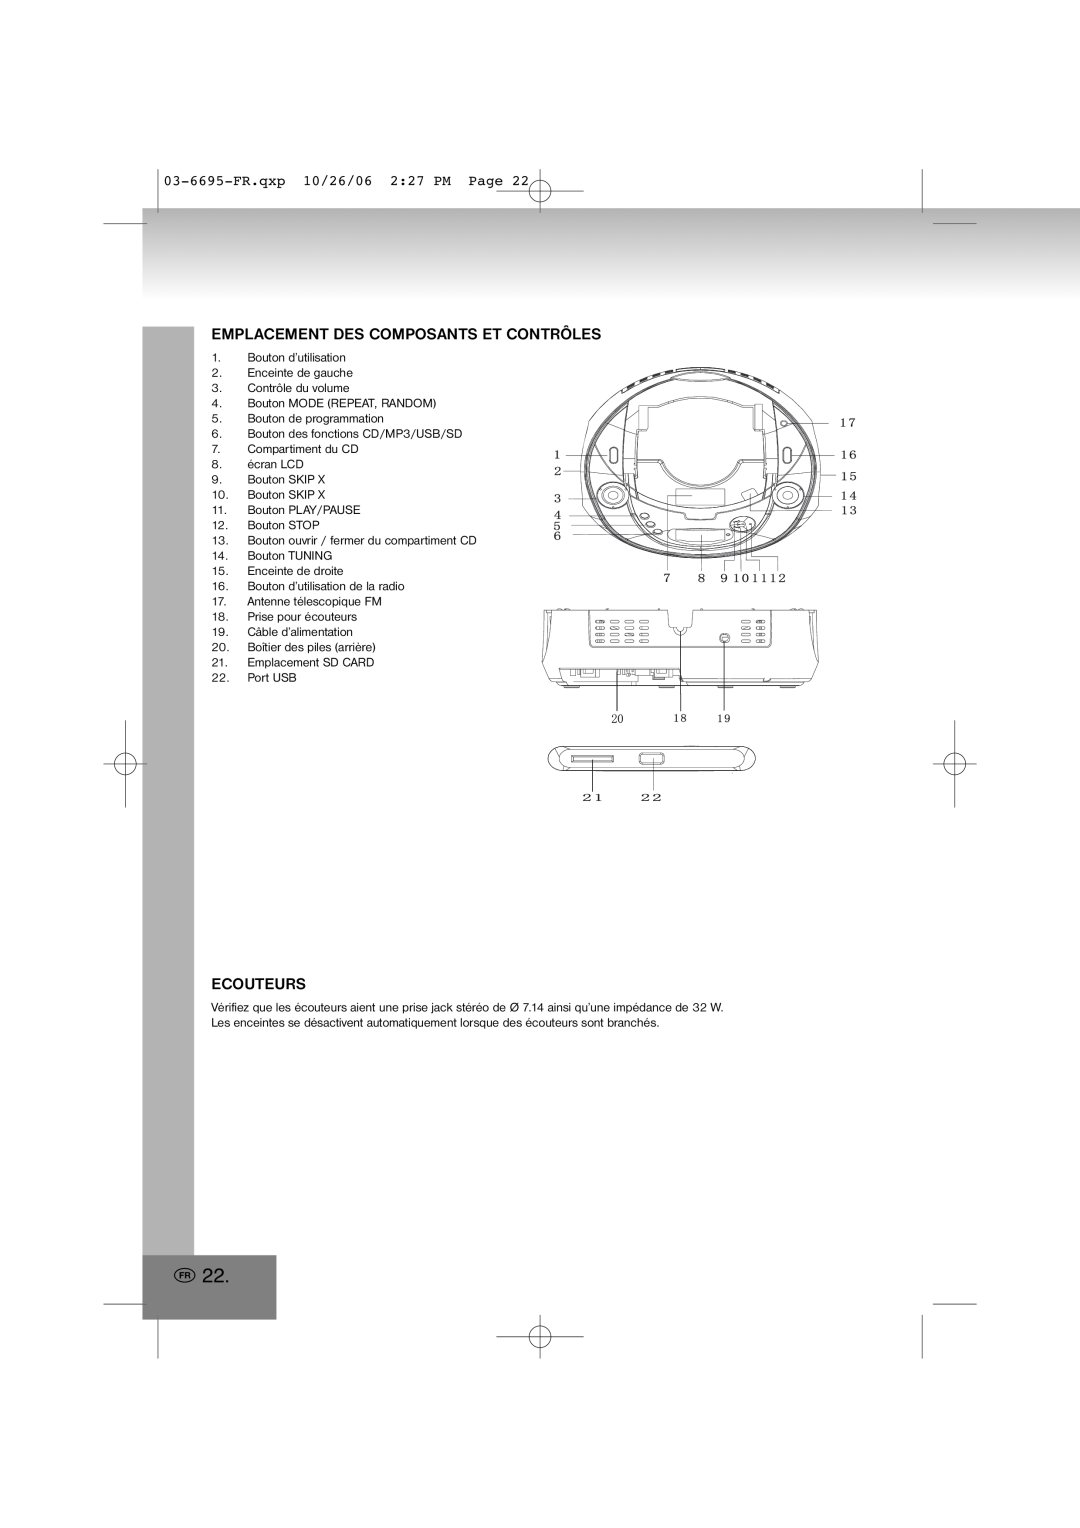 Elta manual Emplacement Des Composants Et Contrôles, Ecouteurs, 03-6695-FR.qxp10/26/06 2 27 PM Page 